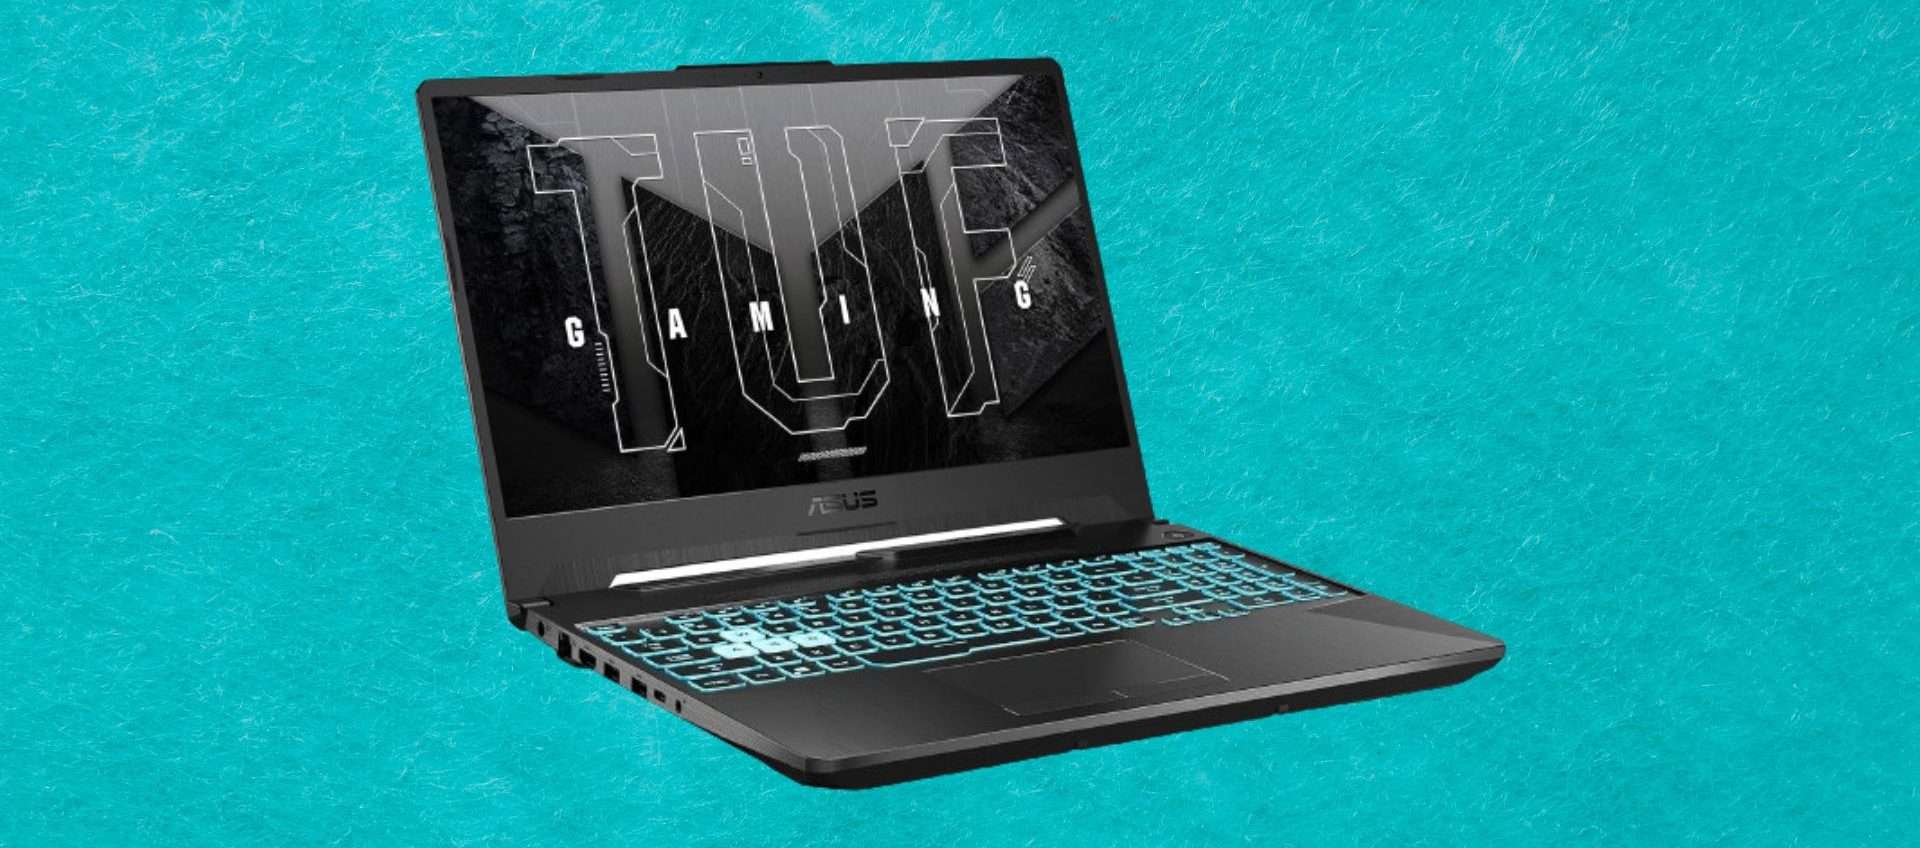 Asus TUF A15 in offerta su Amazon: laptop da gaming a meno di 800€